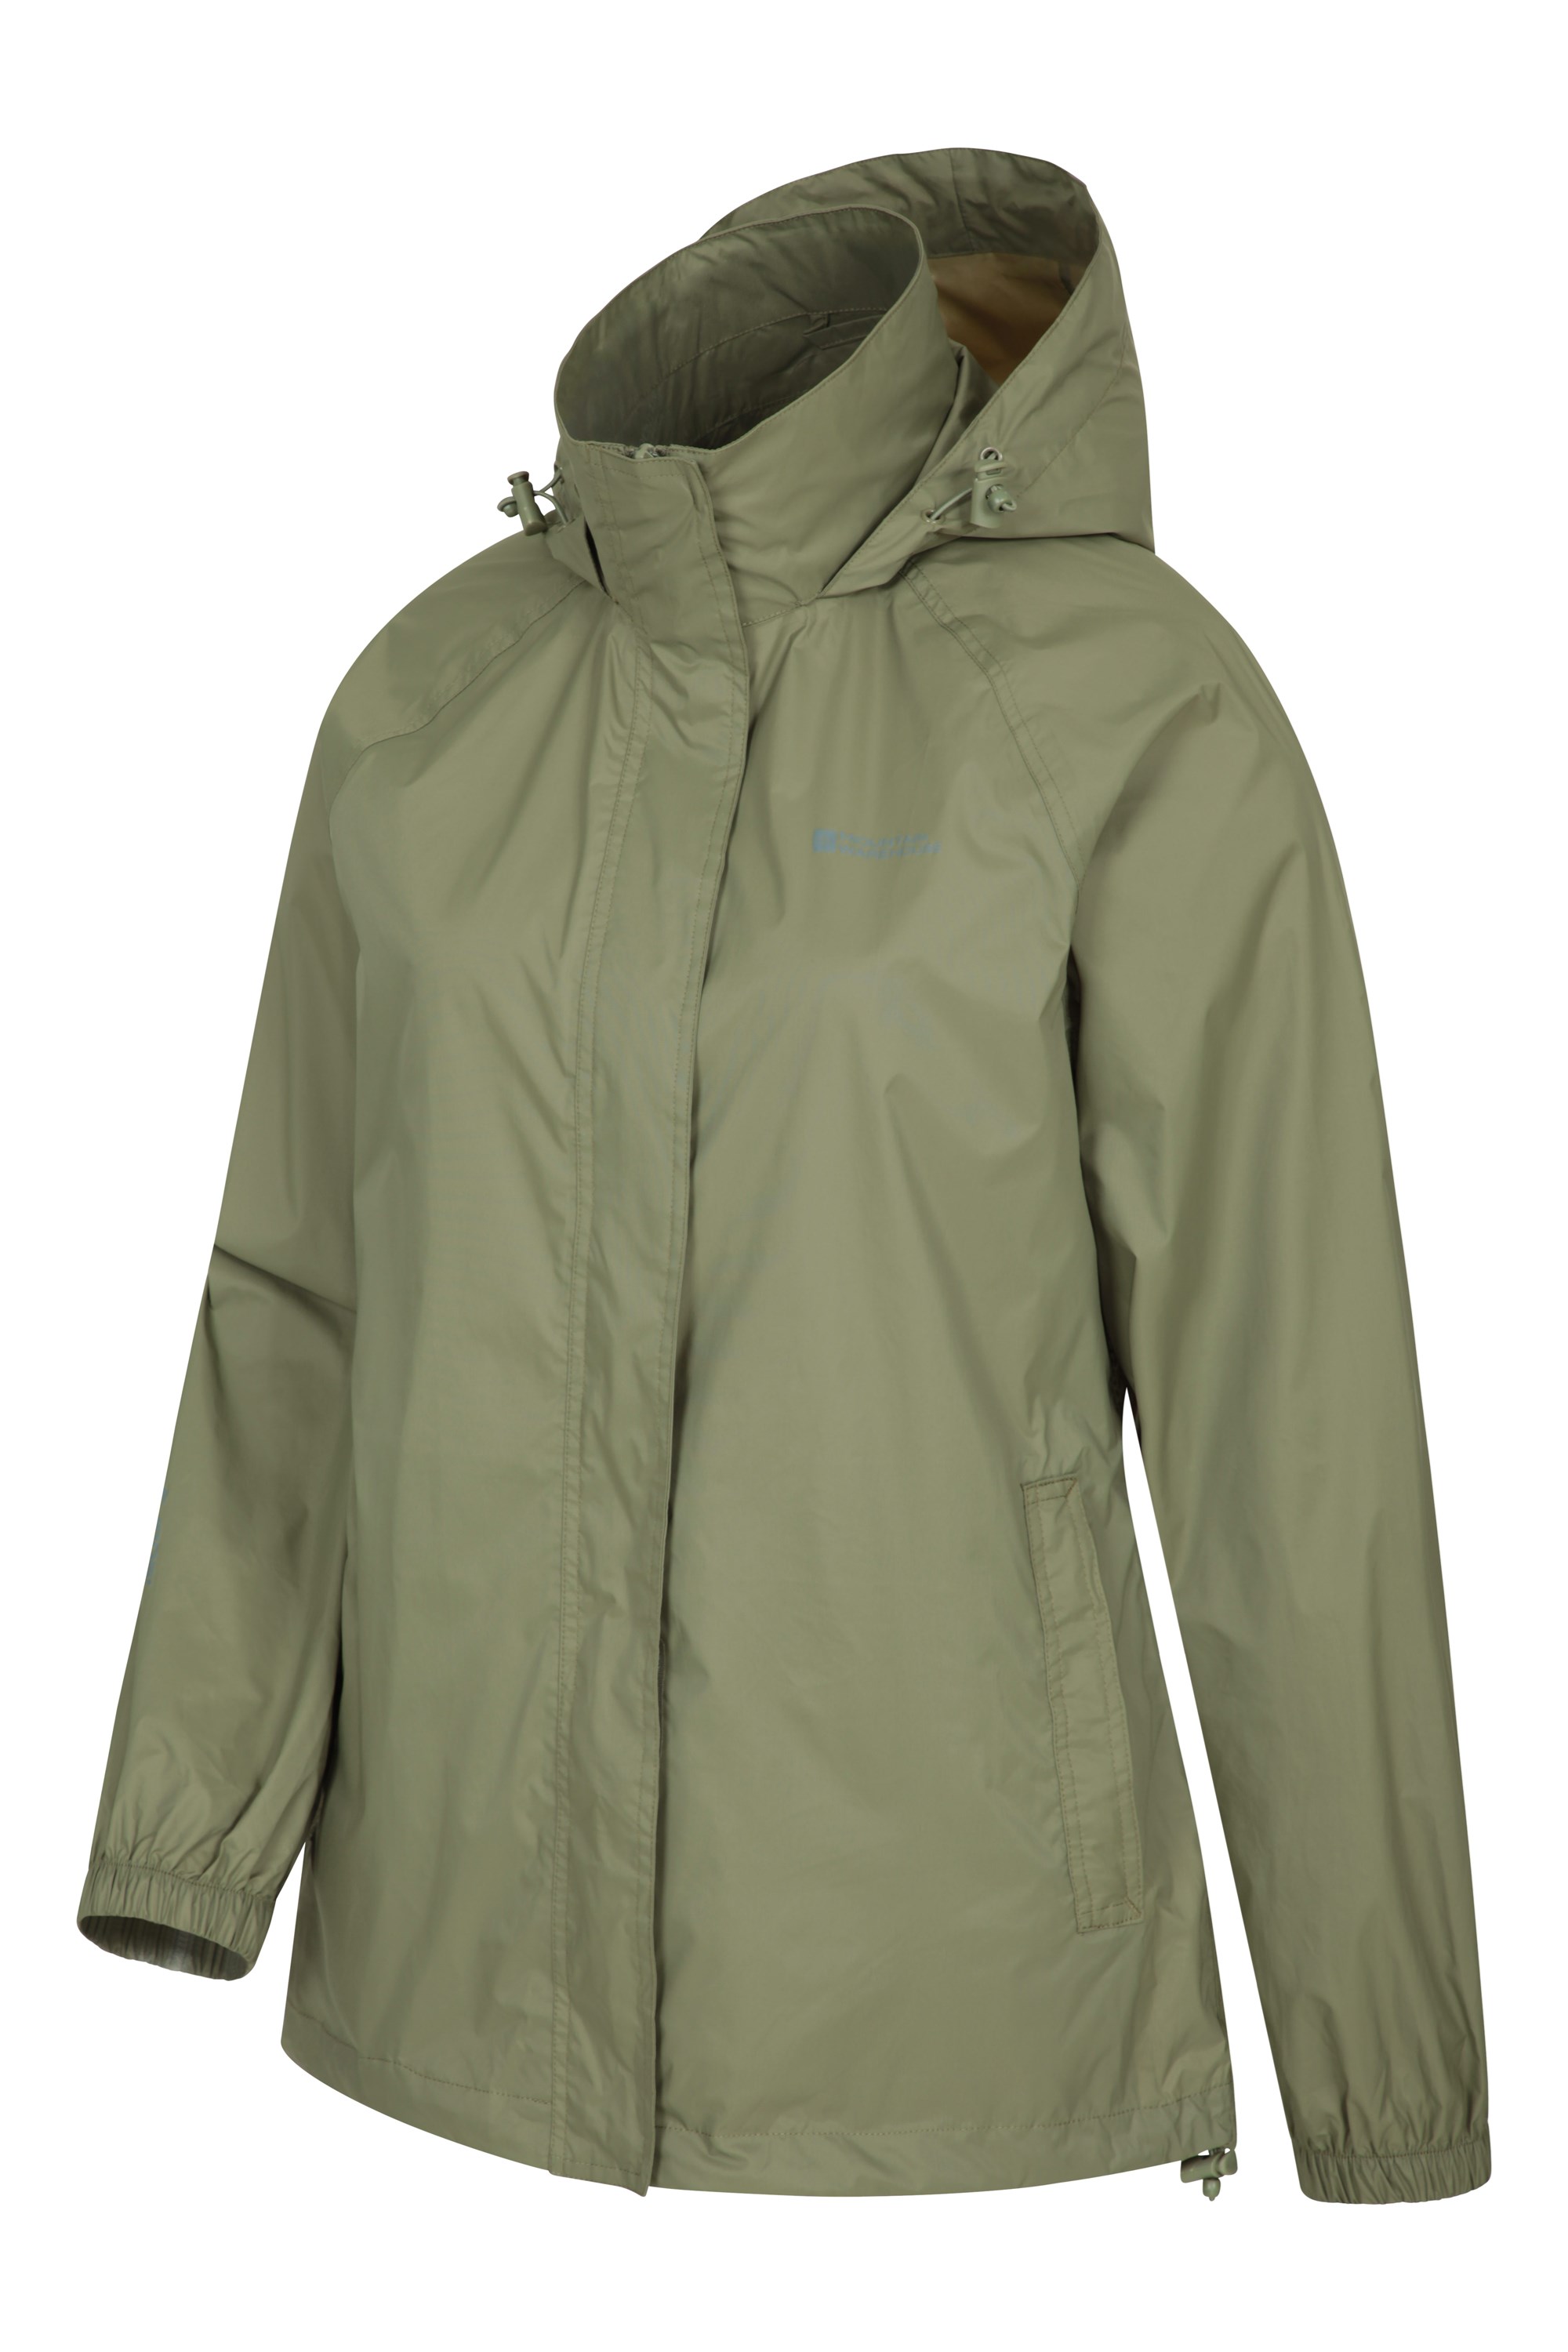 Details about   Mountain Warehouse Womens Rain Jacket Waterproof Packable Packaway Coat Ladies 